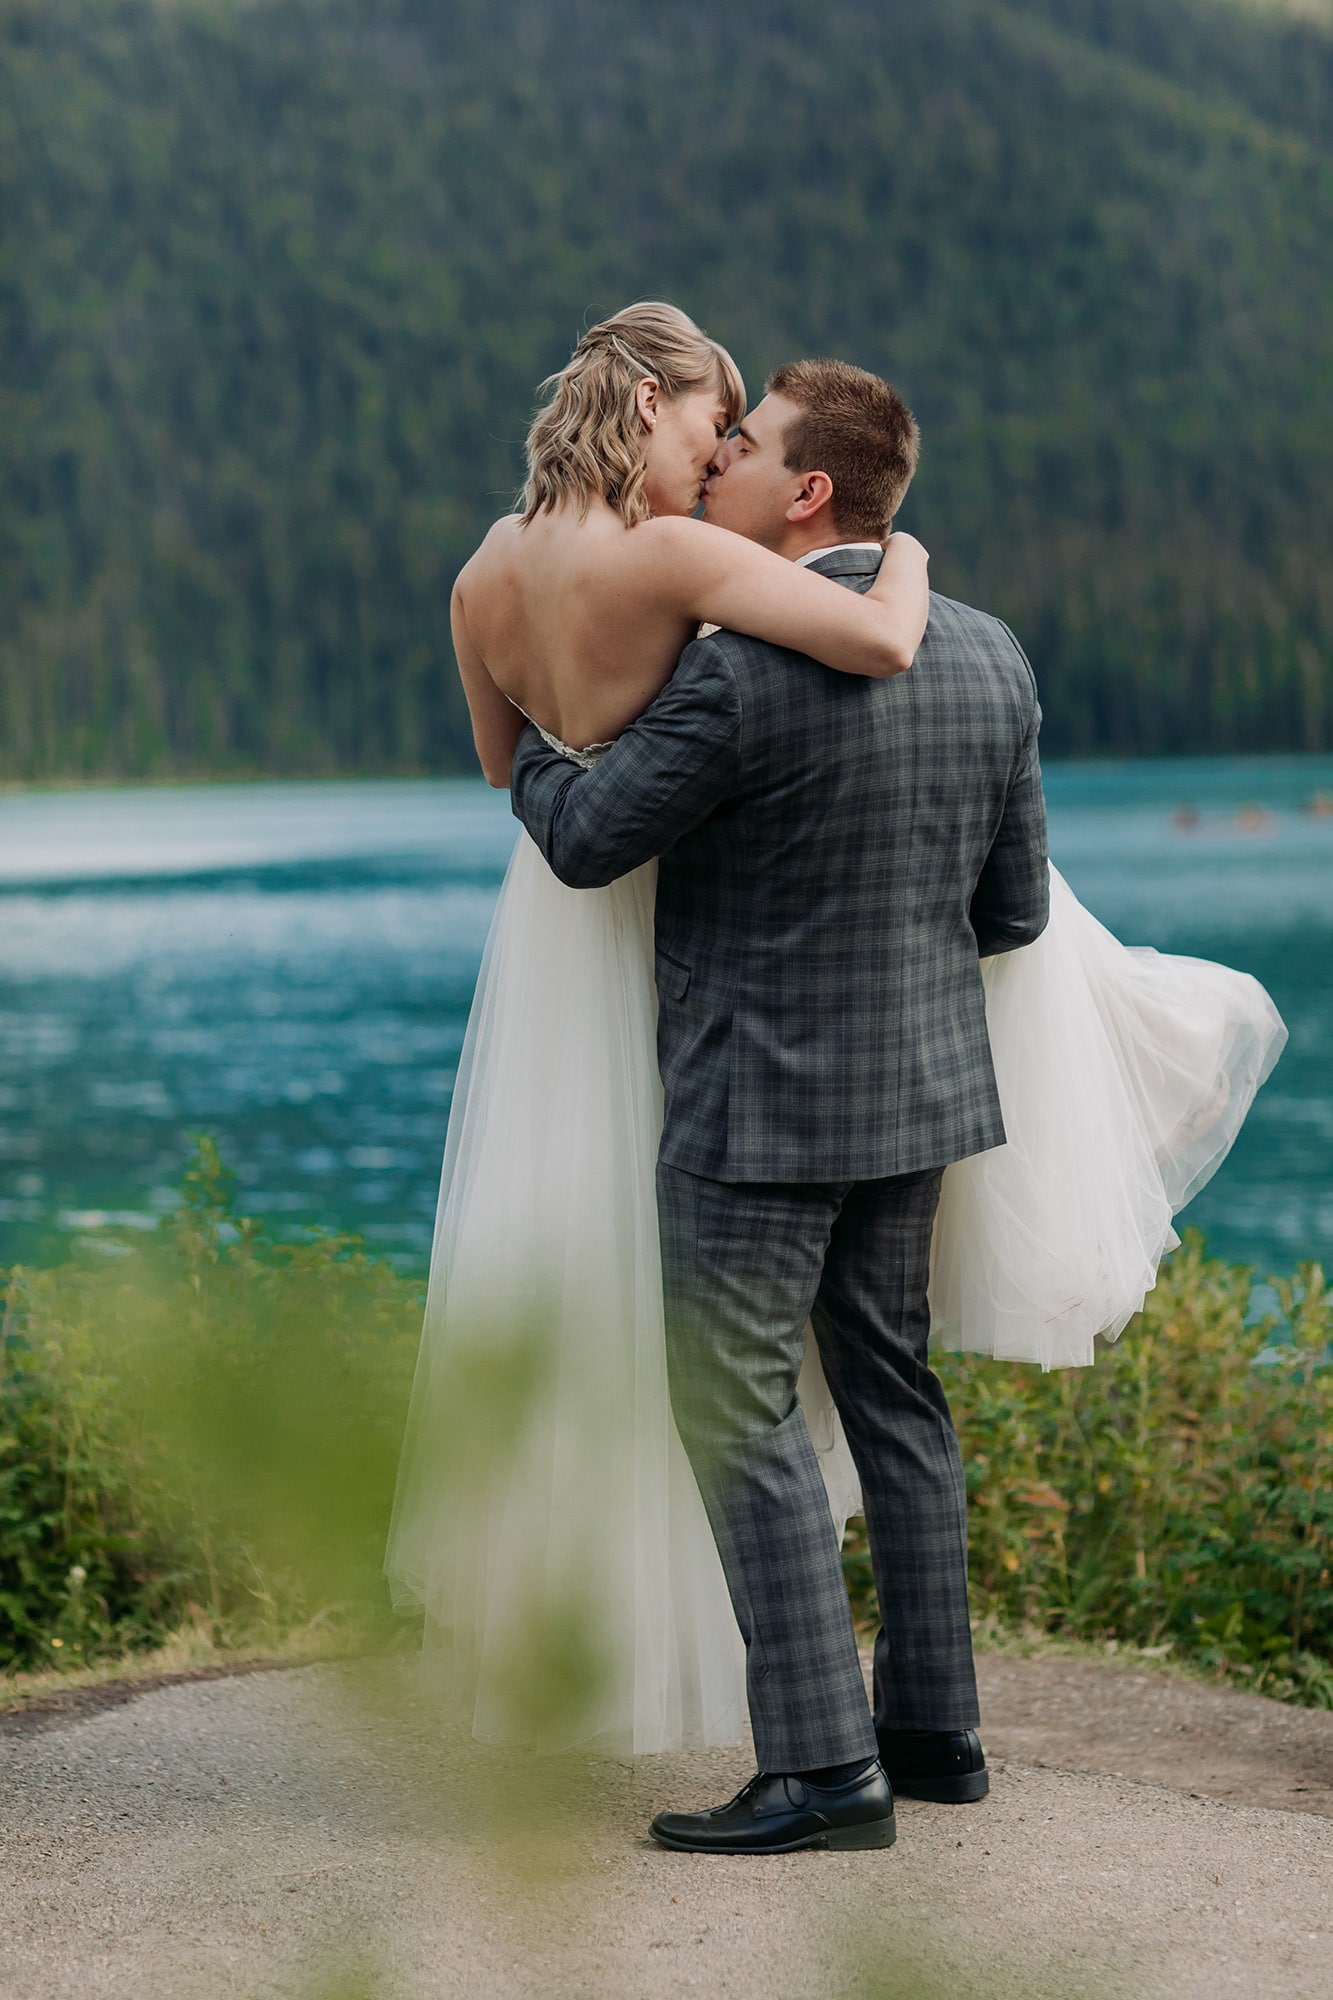 emerald lake autumn wedding bride groom couples photos